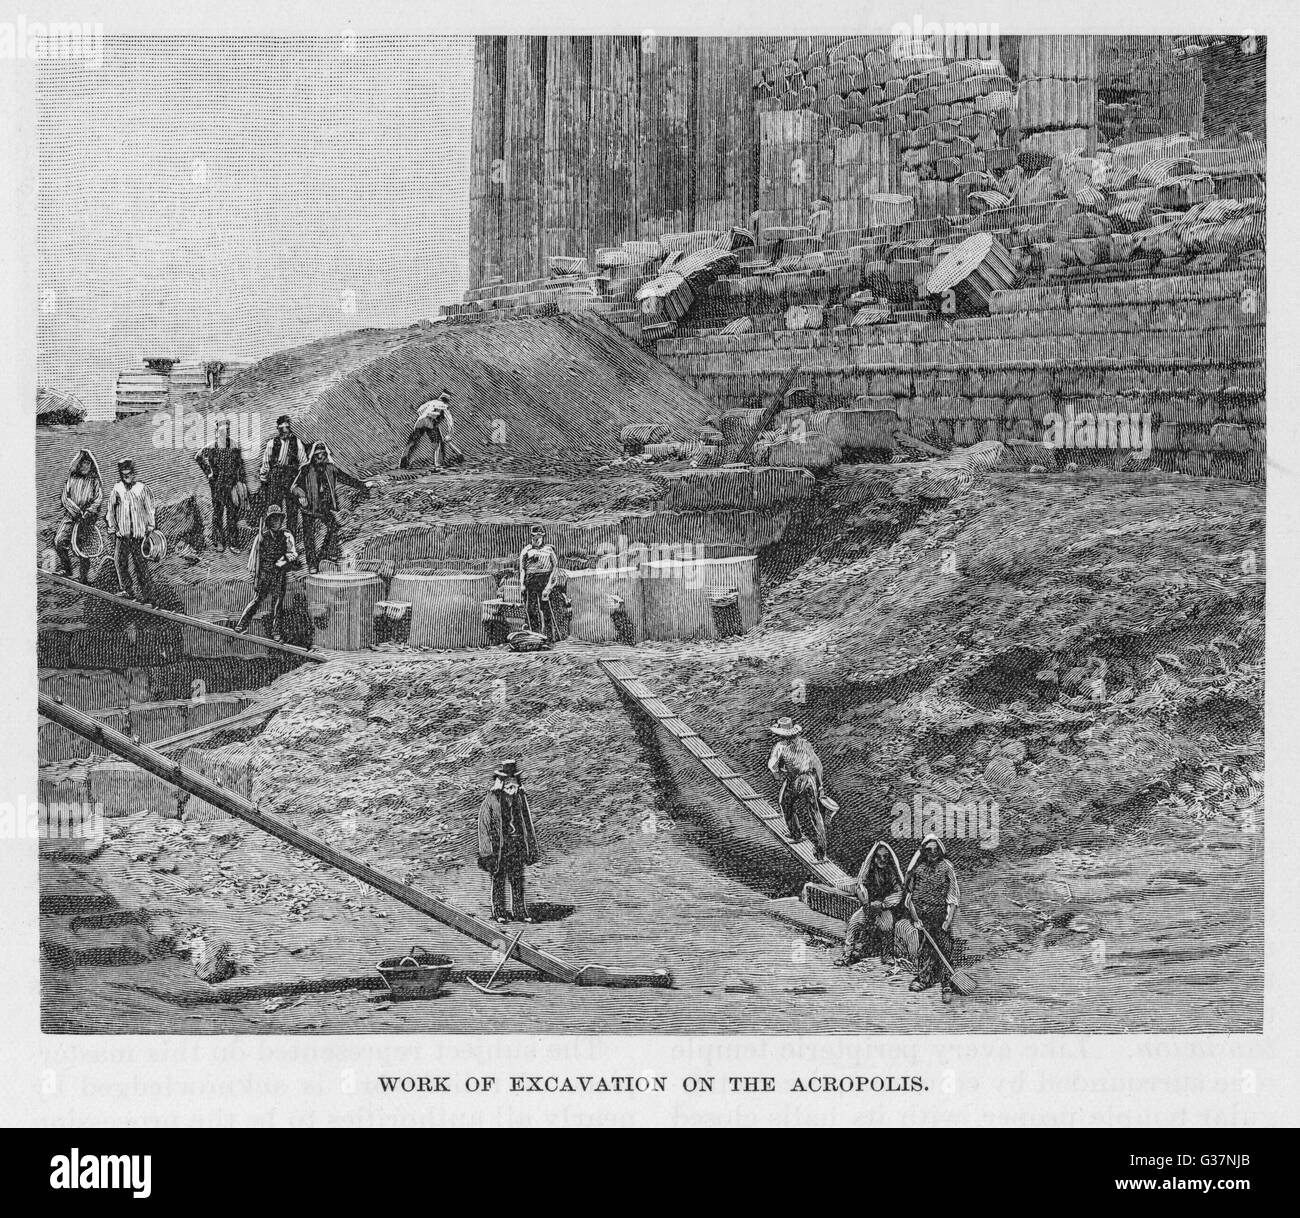 Lavori di scavo sull'Acropoli data: 1890 Foto Stock